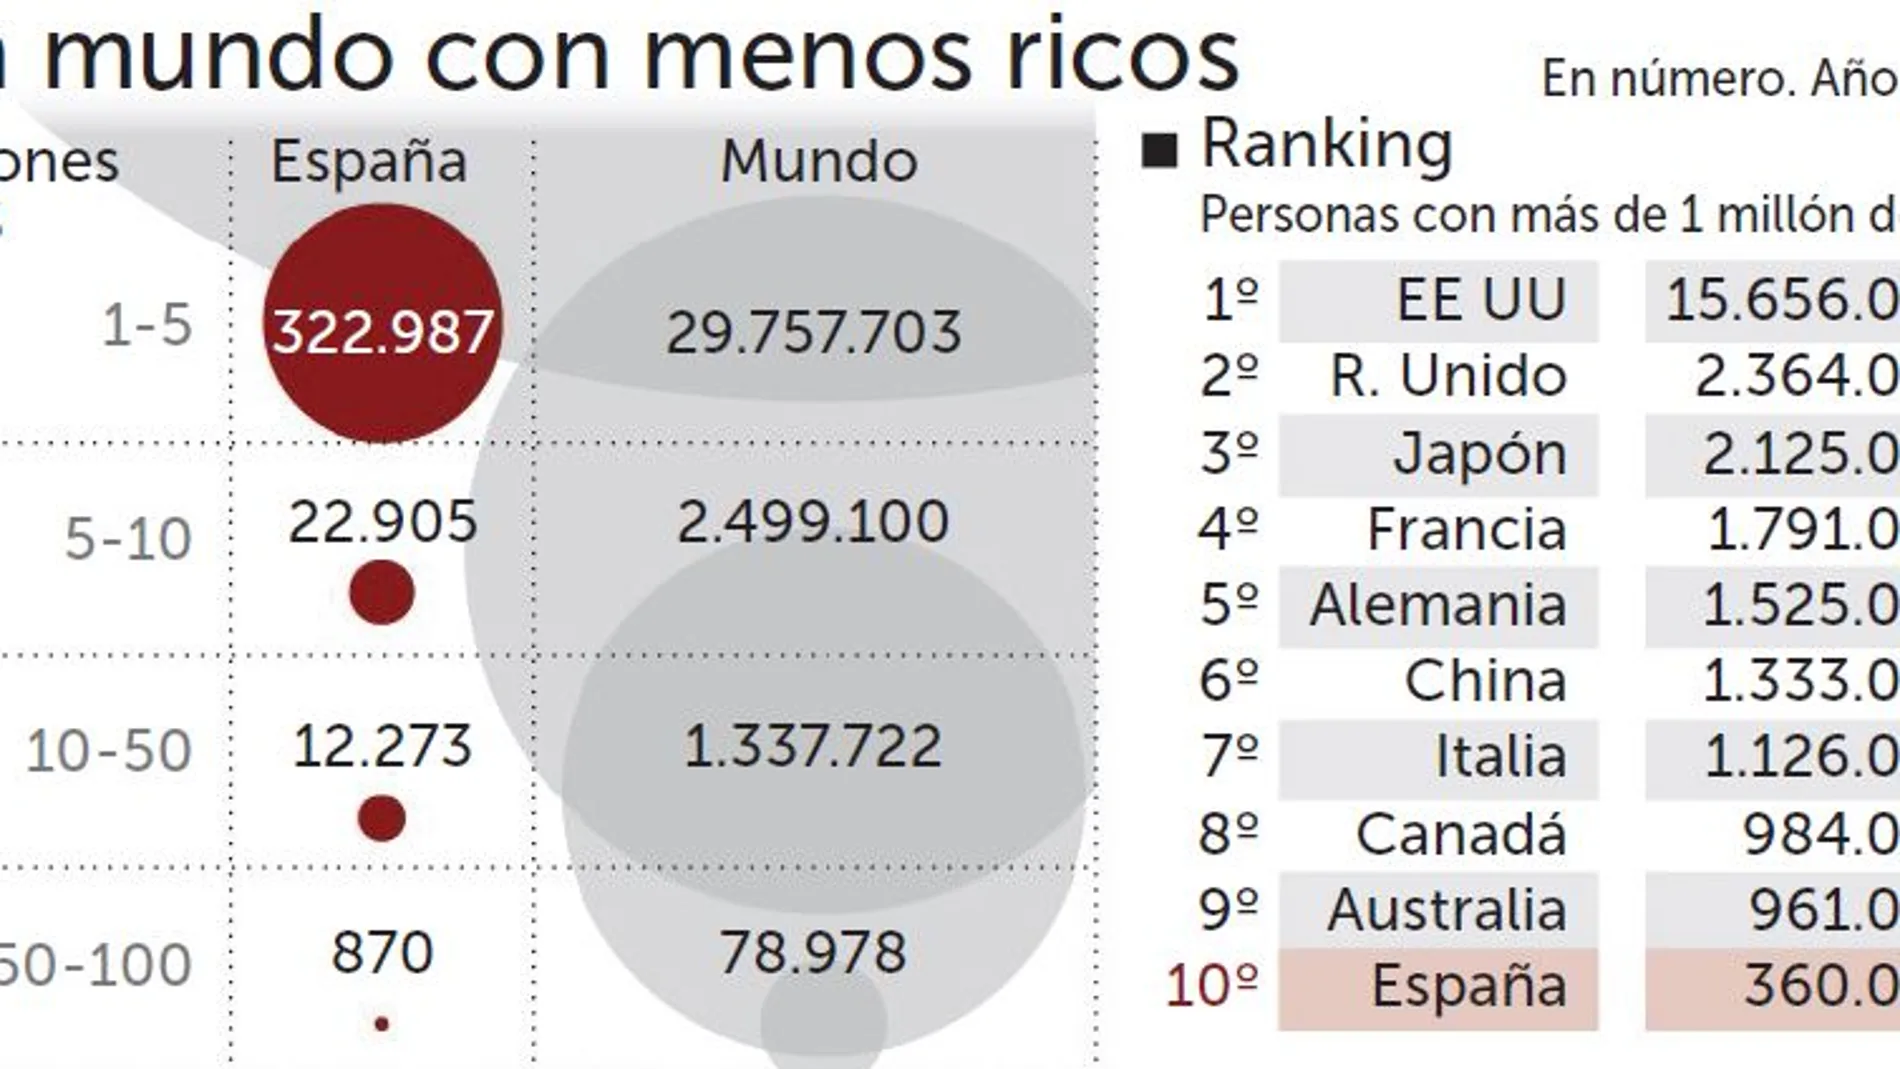 Veinte españoles tienen más de 1.000 millones de dólares